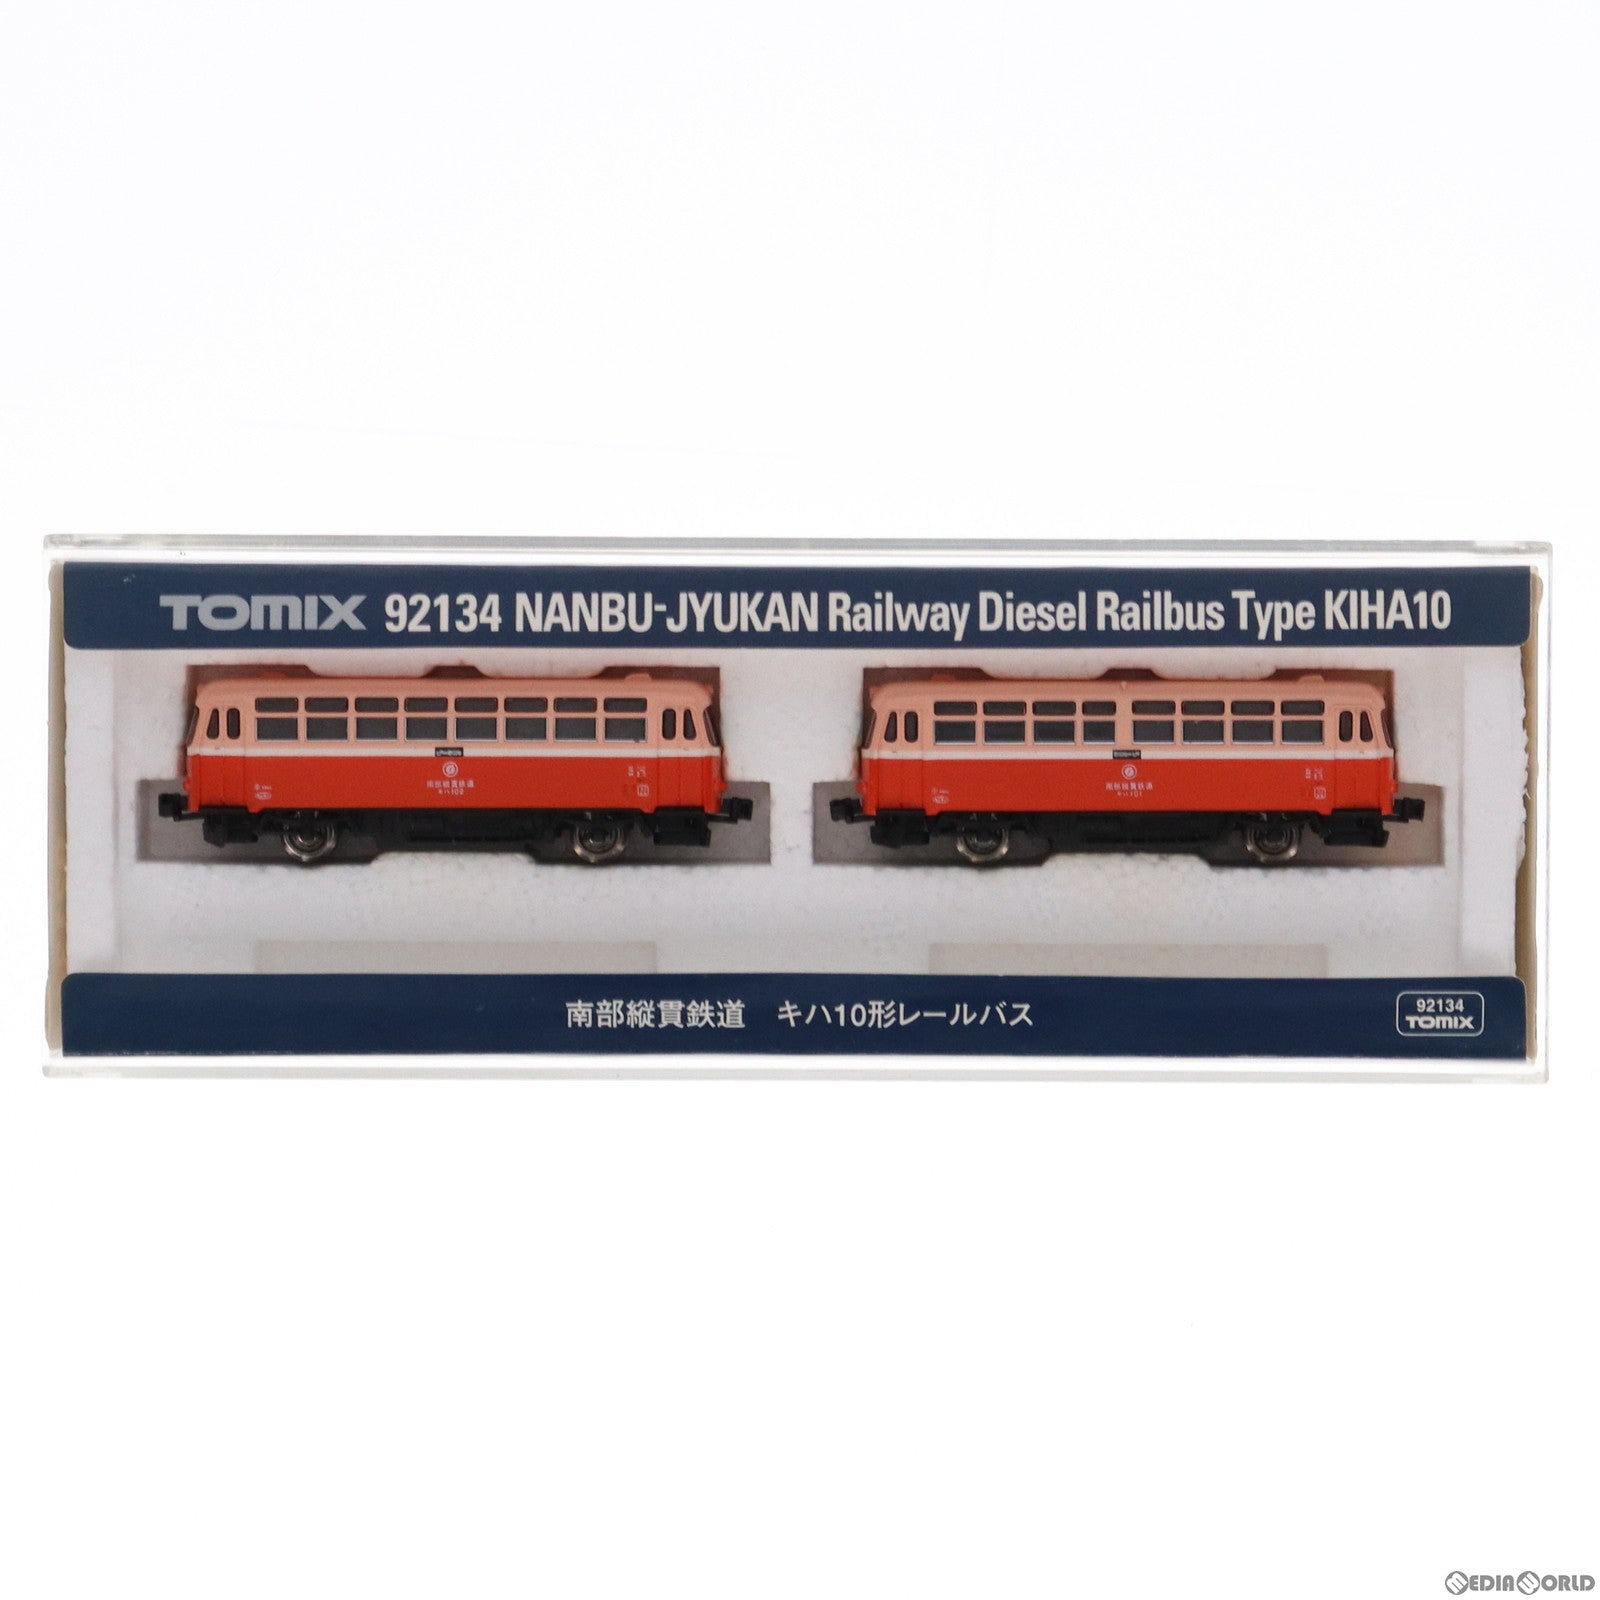 【中古即納】[RWM]92134 南部縦貫鉄道 キハ10形 レールバス 2両セット(動力付き) Nゲージ 鉄道模型(20021220)